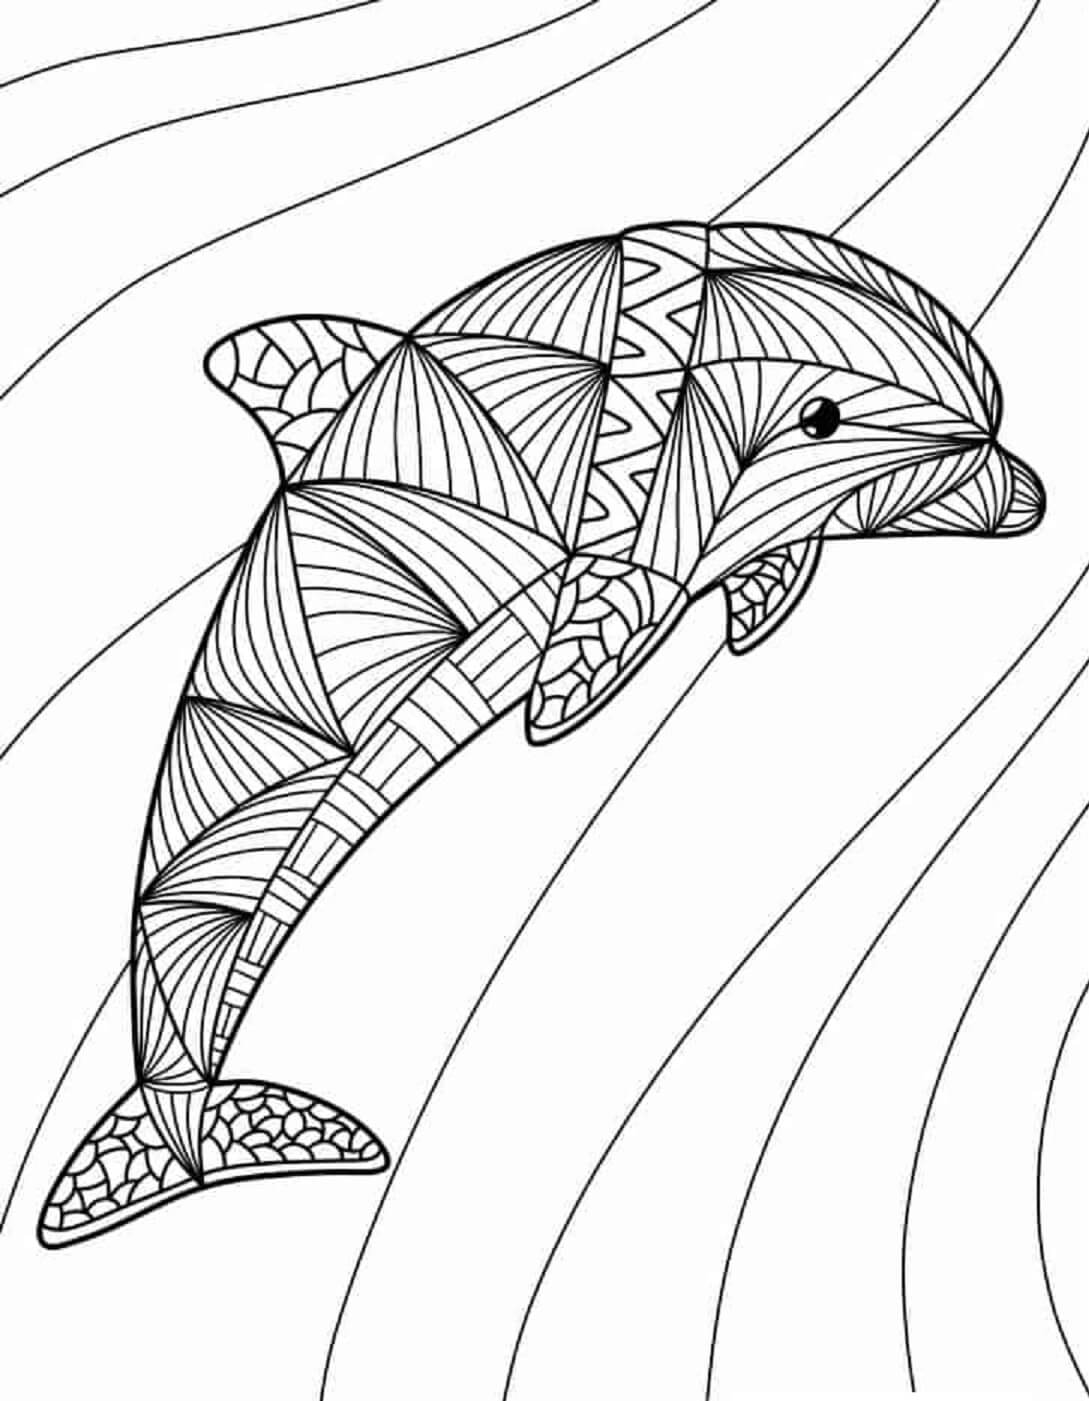 Mandala Dolphin Coloring Page - Sheet 7 Mandalas